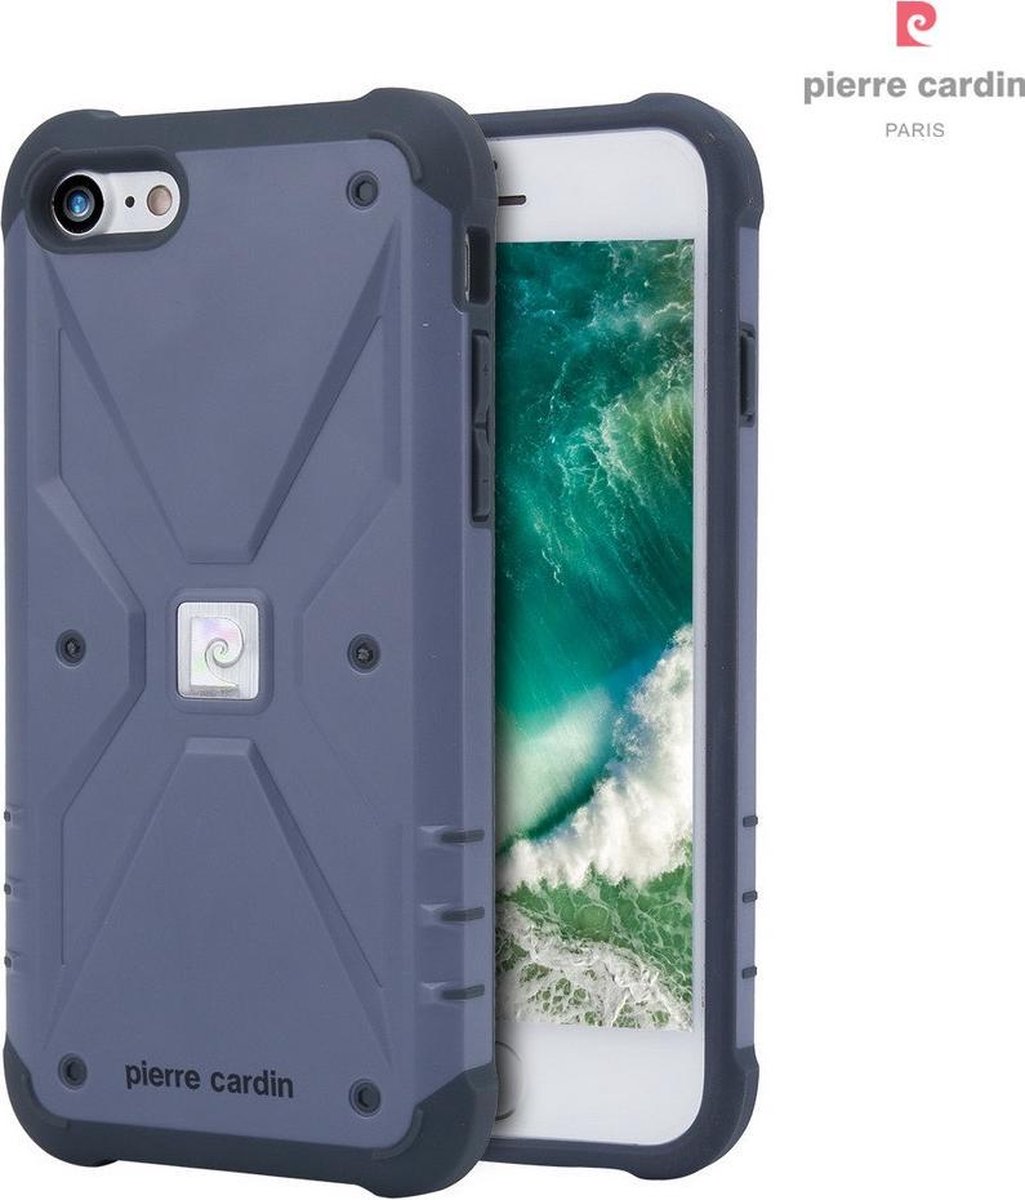 Blauw hoesje van Pierre Cardin - Backcover - Stijlvol - Leer - iPhone 7-8 - Luxe cover